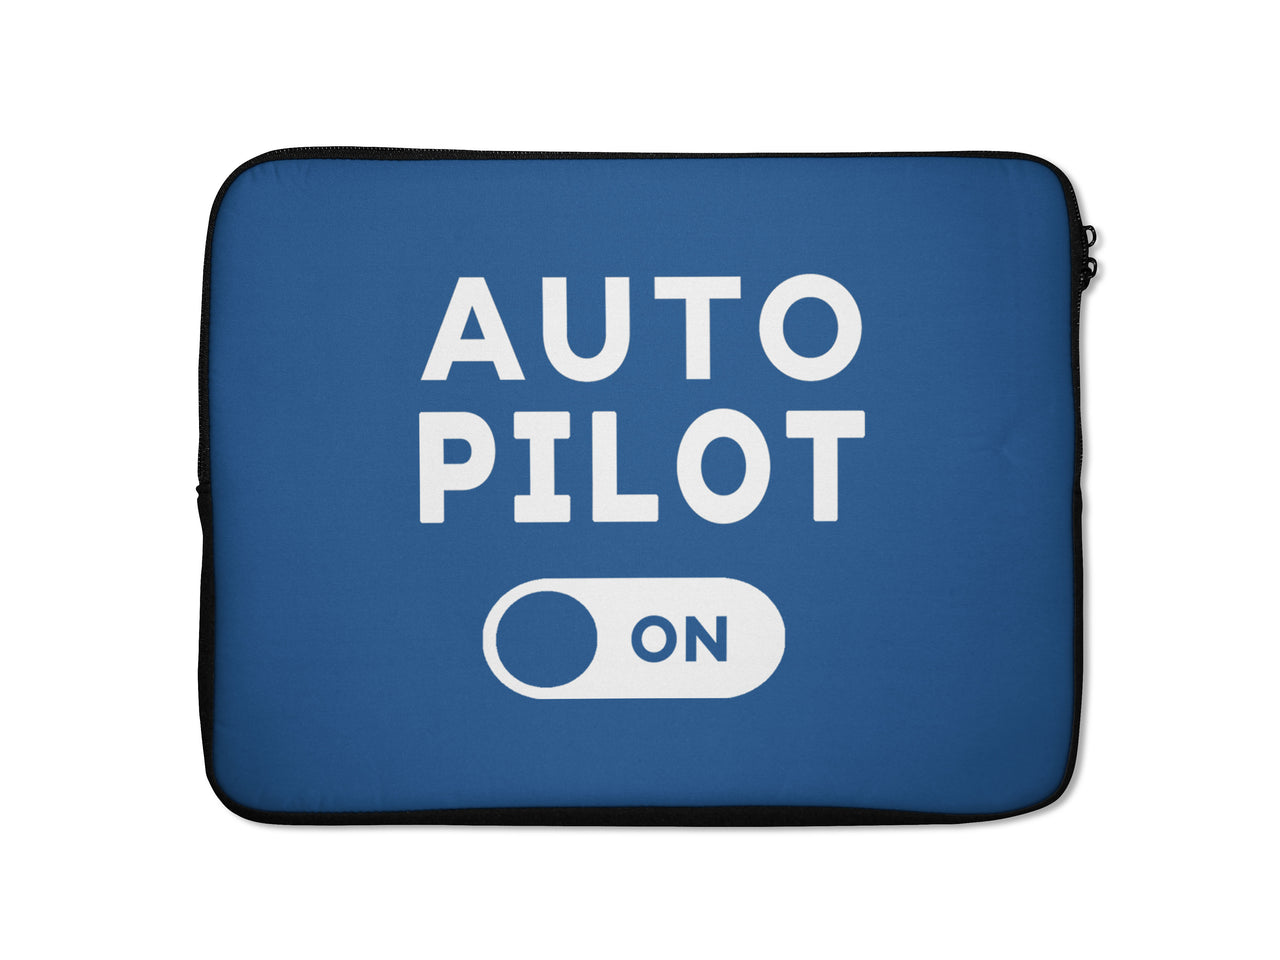 Auto Pilot ON Designed Laptop & Tablet Cases